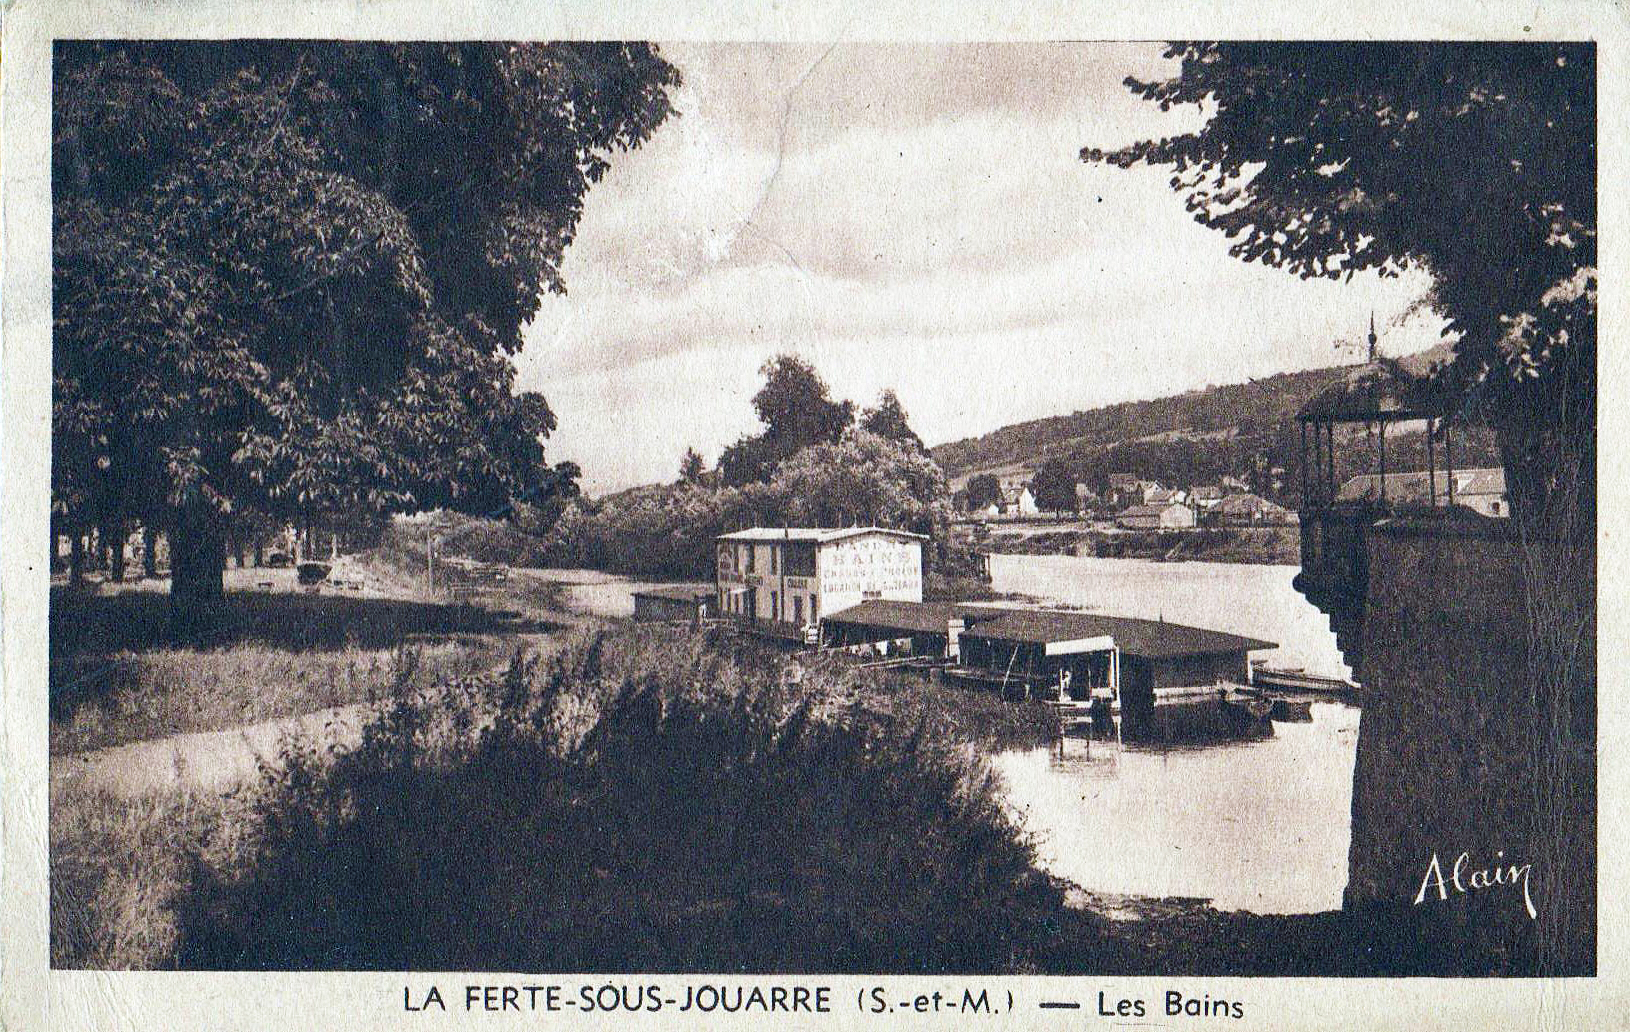 La Ferté-sous-Jouarre -Les Bains